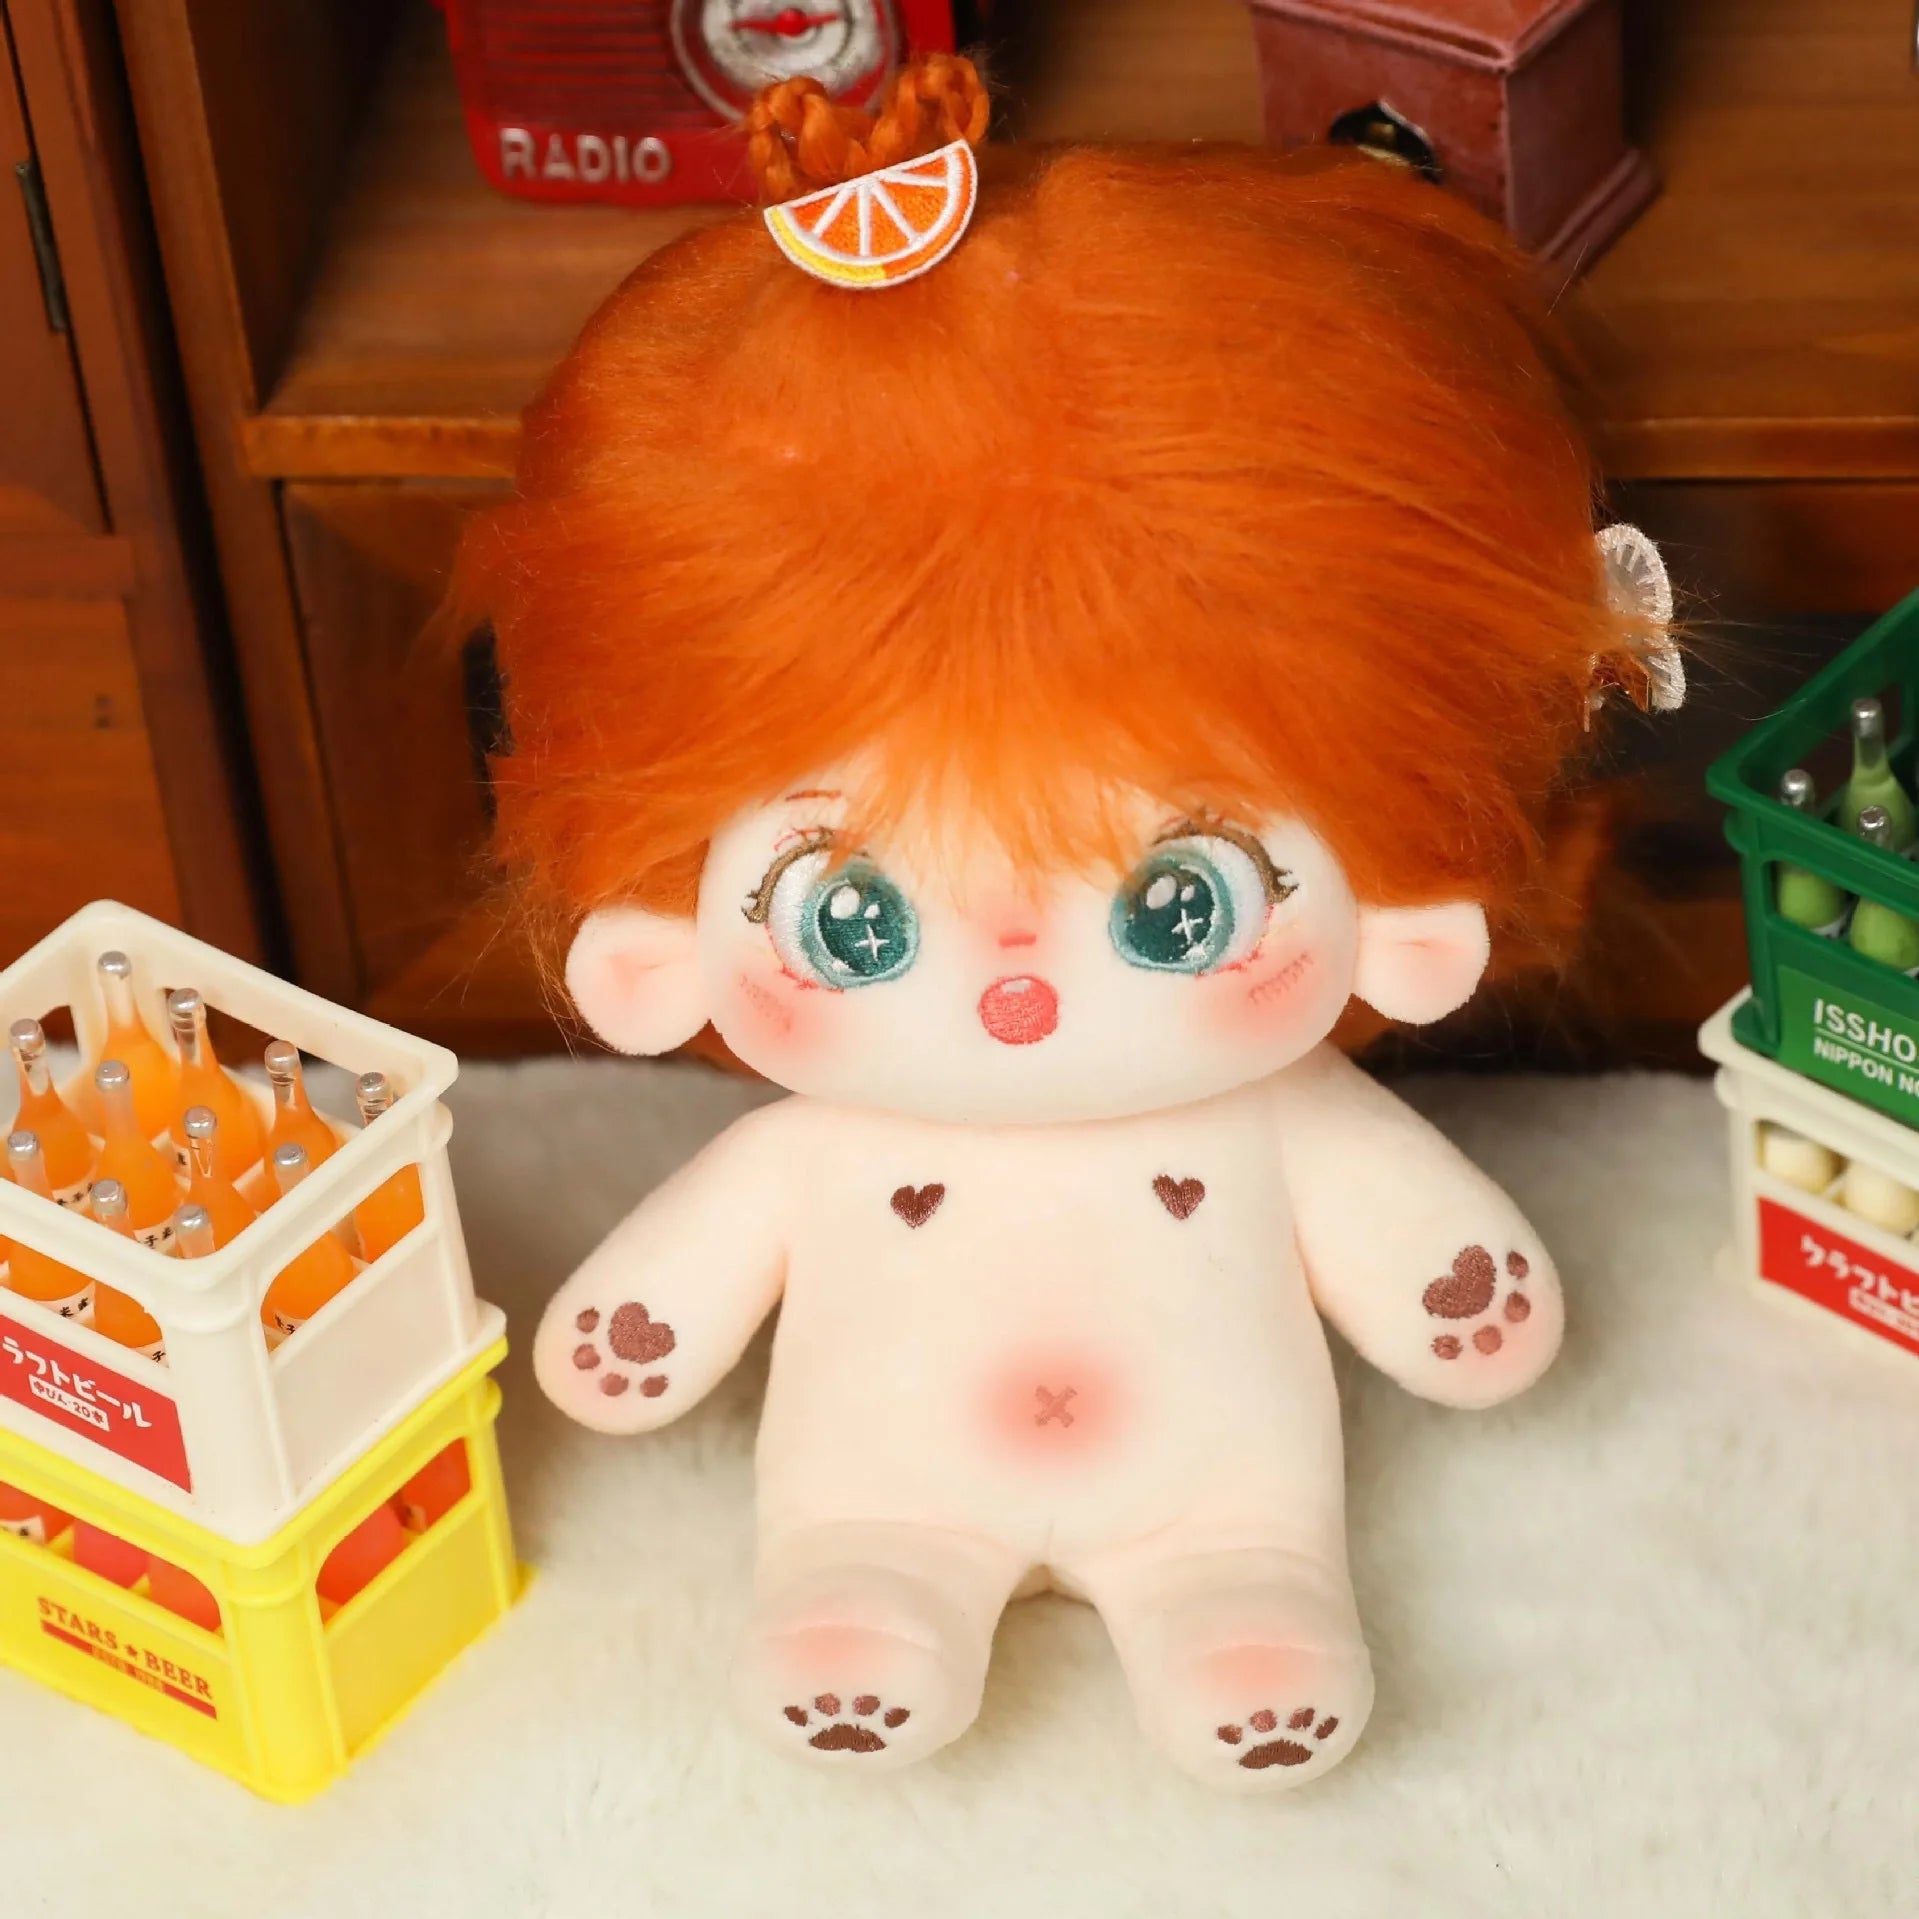 Kawaii Plush Idol Super Star Doll - 20cm Stuffed Cotton Figure - ToylandEU